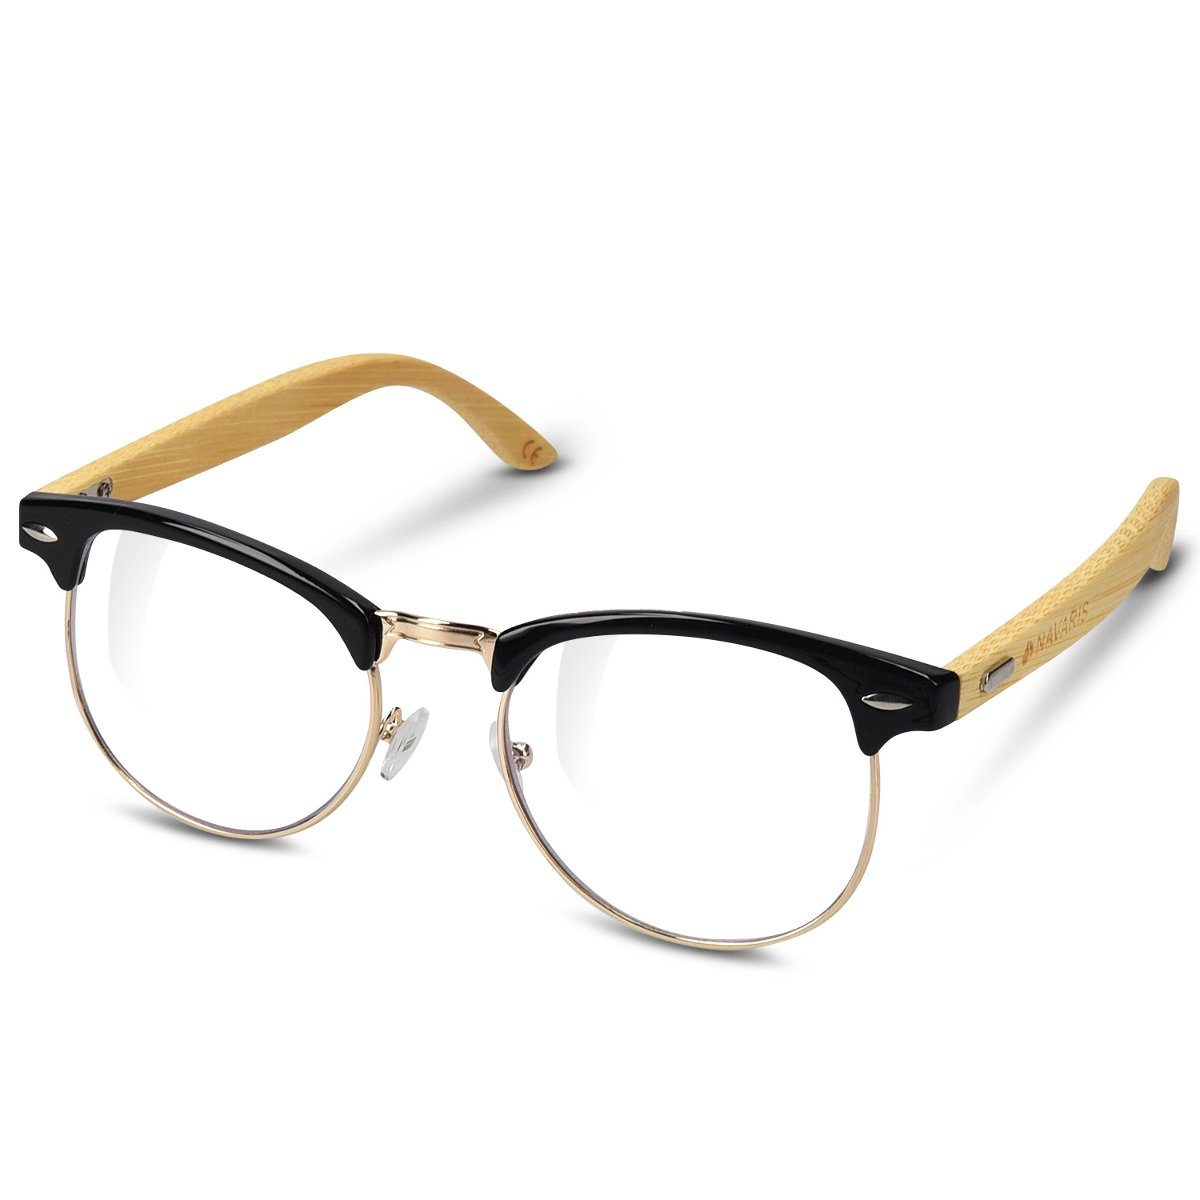 Nerd Sonnenbrille Brille Nerdbrille Retro Vintage Pilotenbrille Männer Frauen